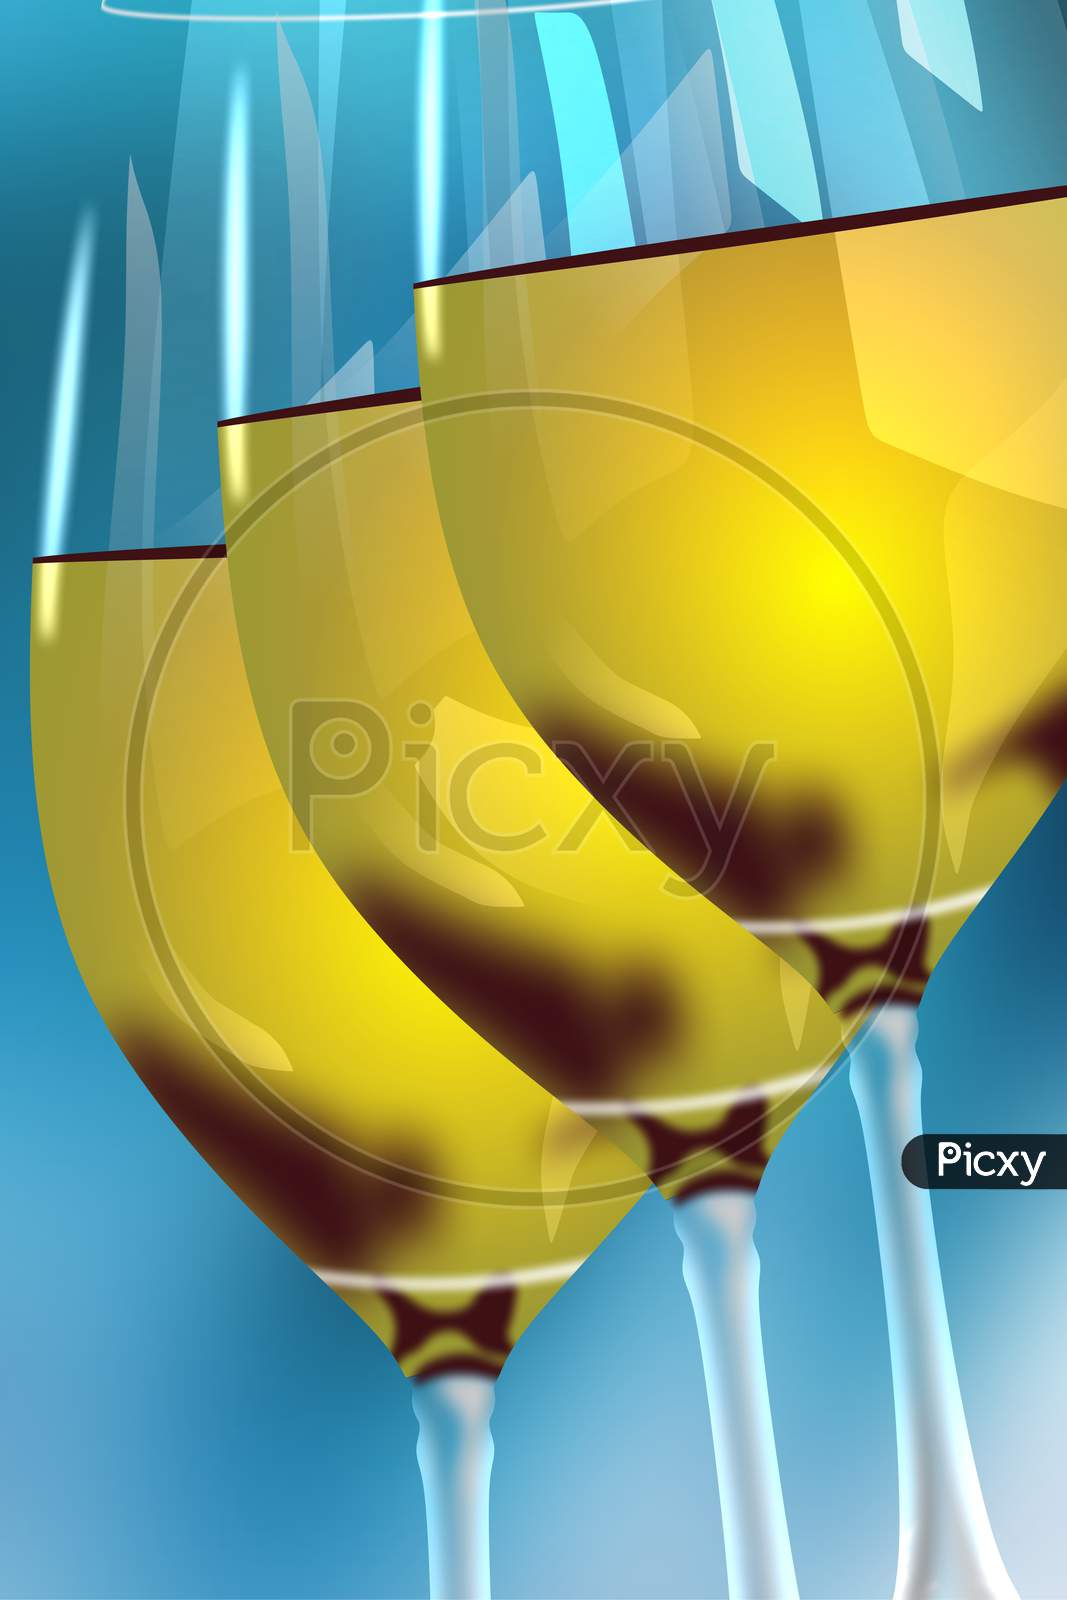 Yellow wine glass